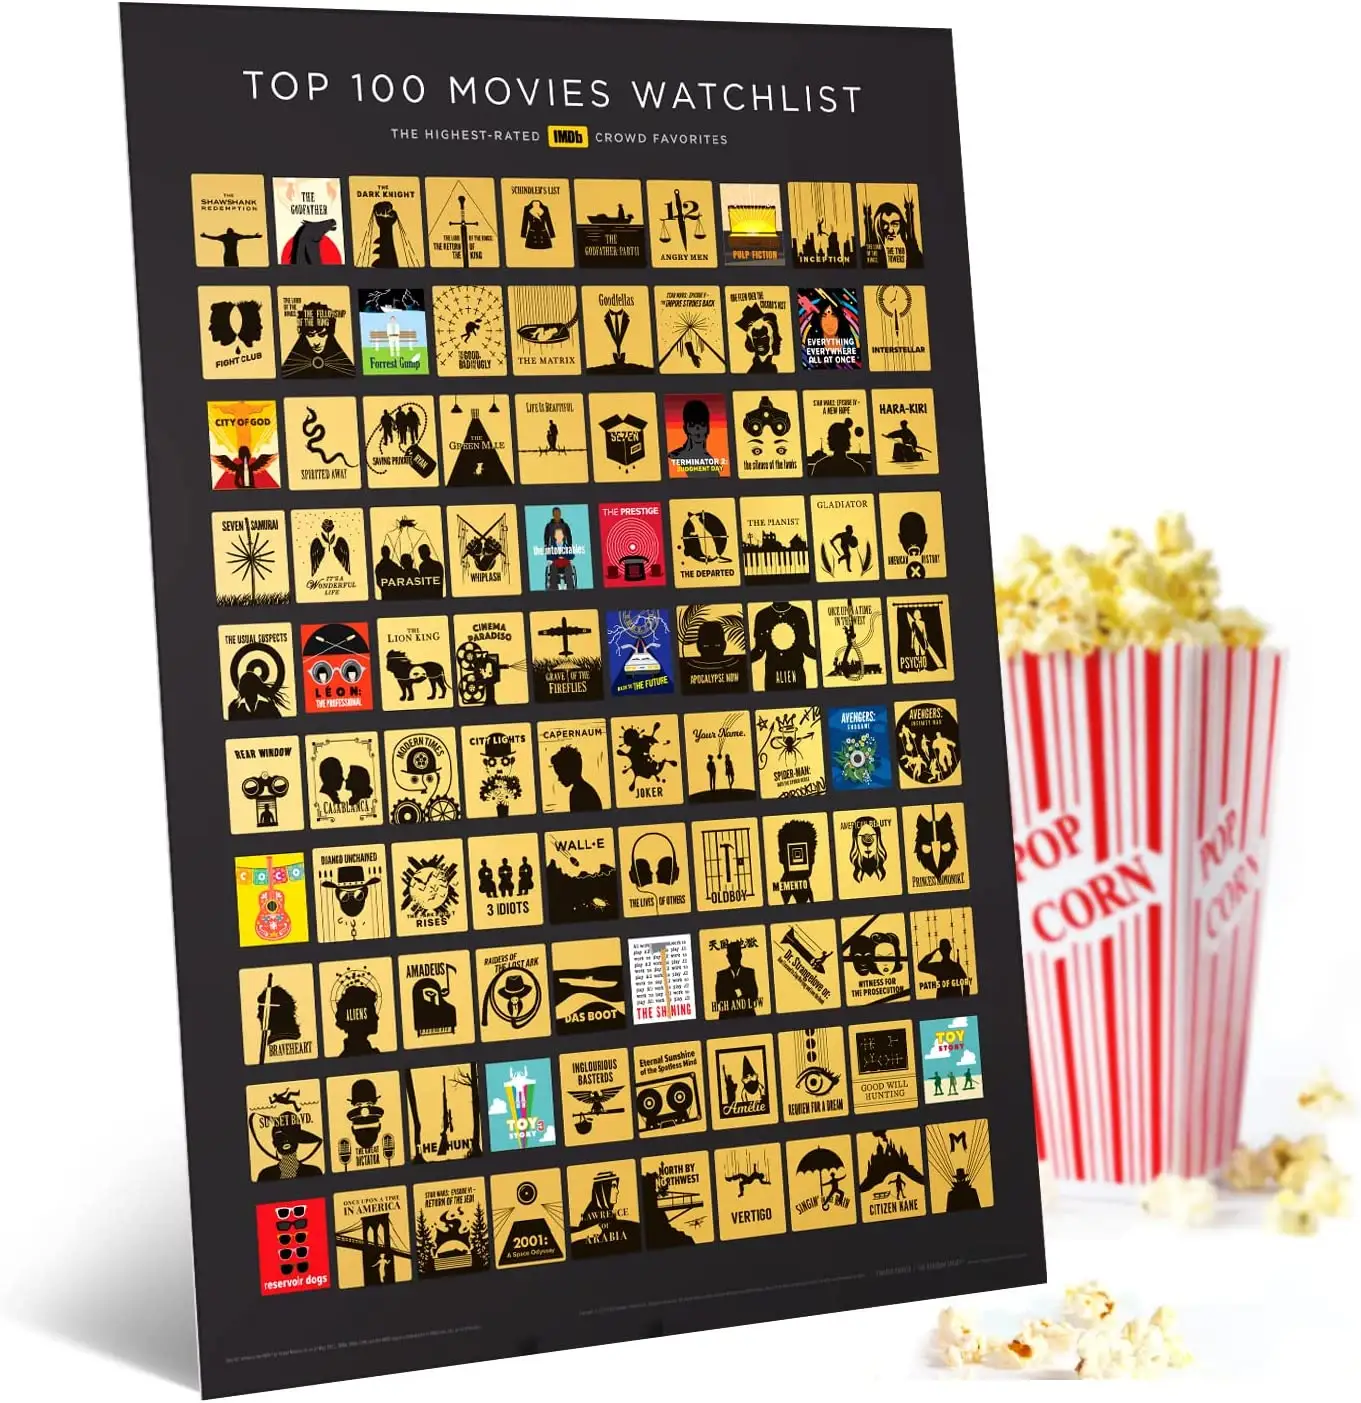 ภาพยนตร์100เรื่องเกาออกโปสเตอร์ของขวัญที่ไม่ซ้ำกันสำหรับคนรักภาพยนตร์ที่มีภาพยนตร์ IMDb 100อันดับแรกตลอดกาล